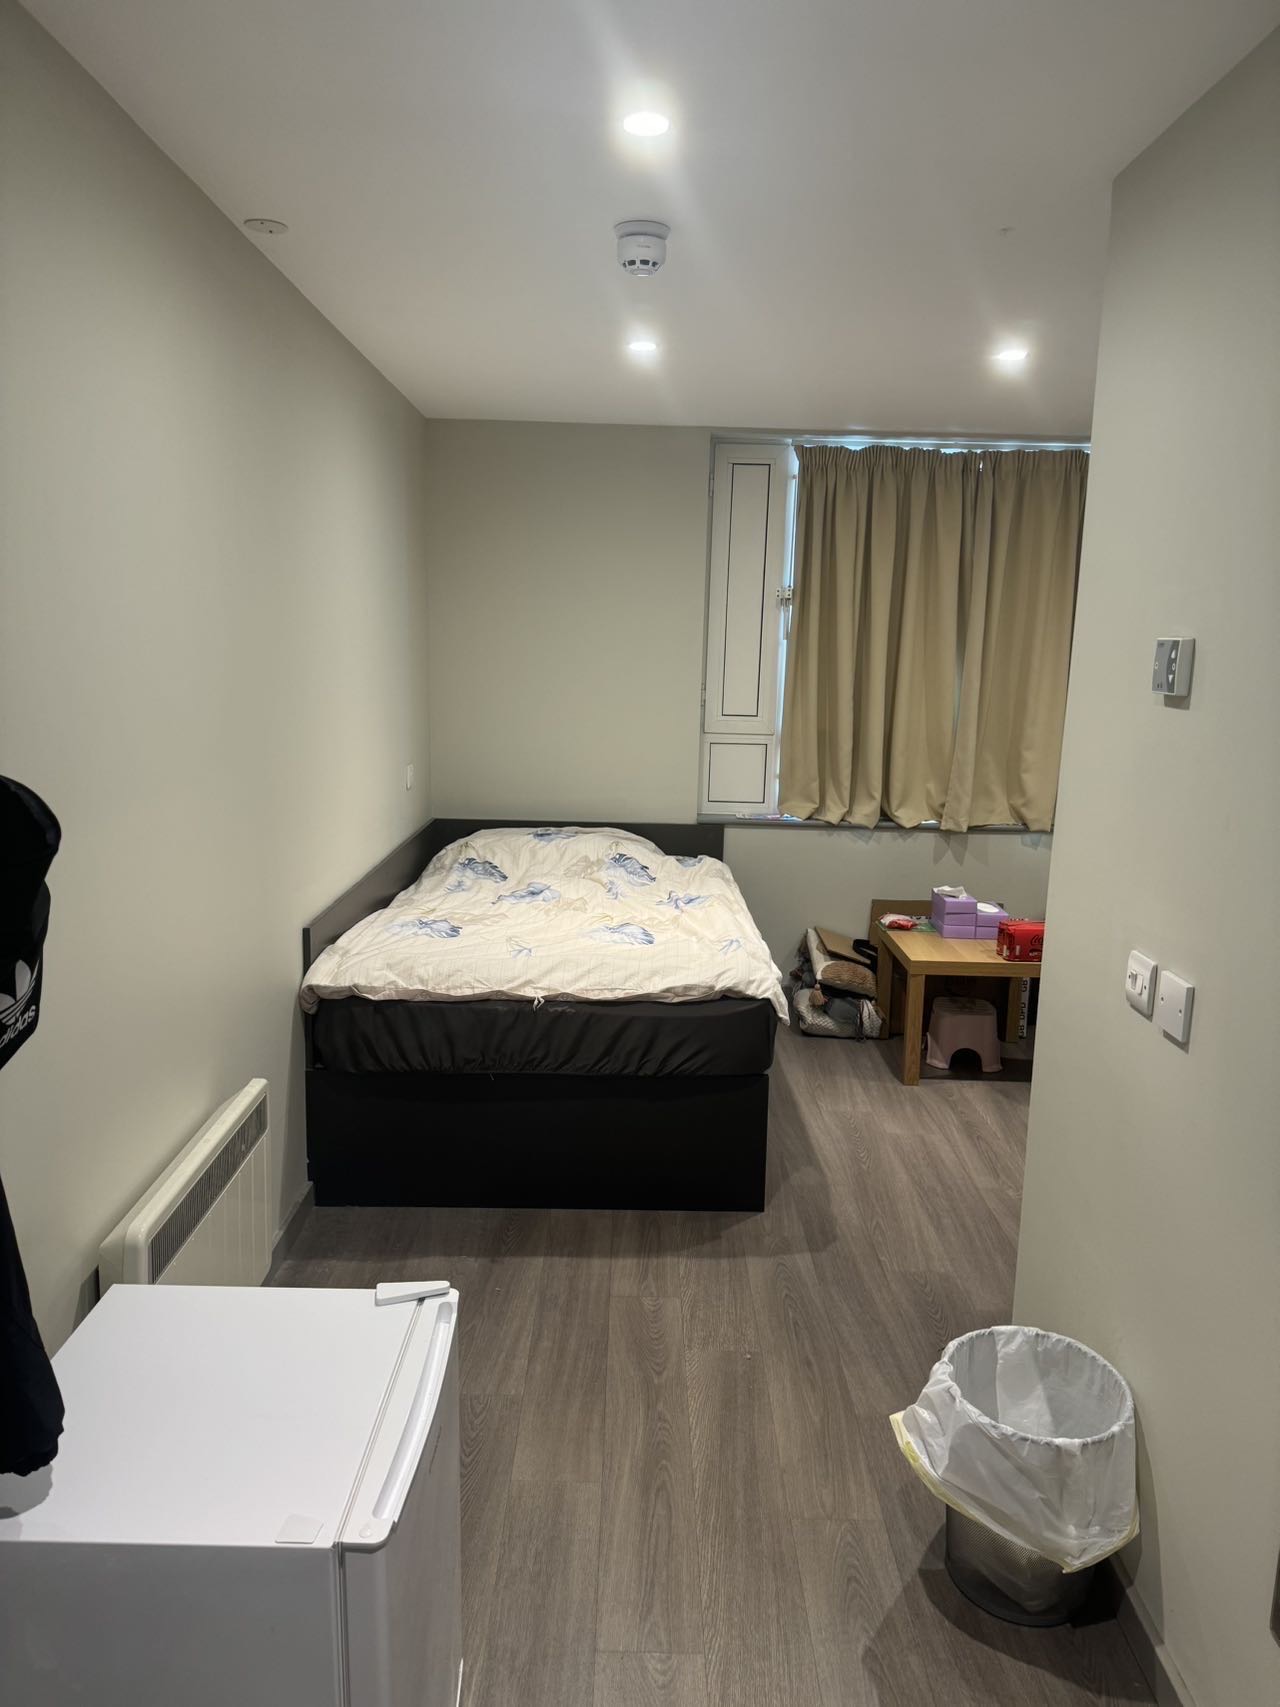 Find 2B1B (2 Bedrooms 1 Bedroom) to rent in London